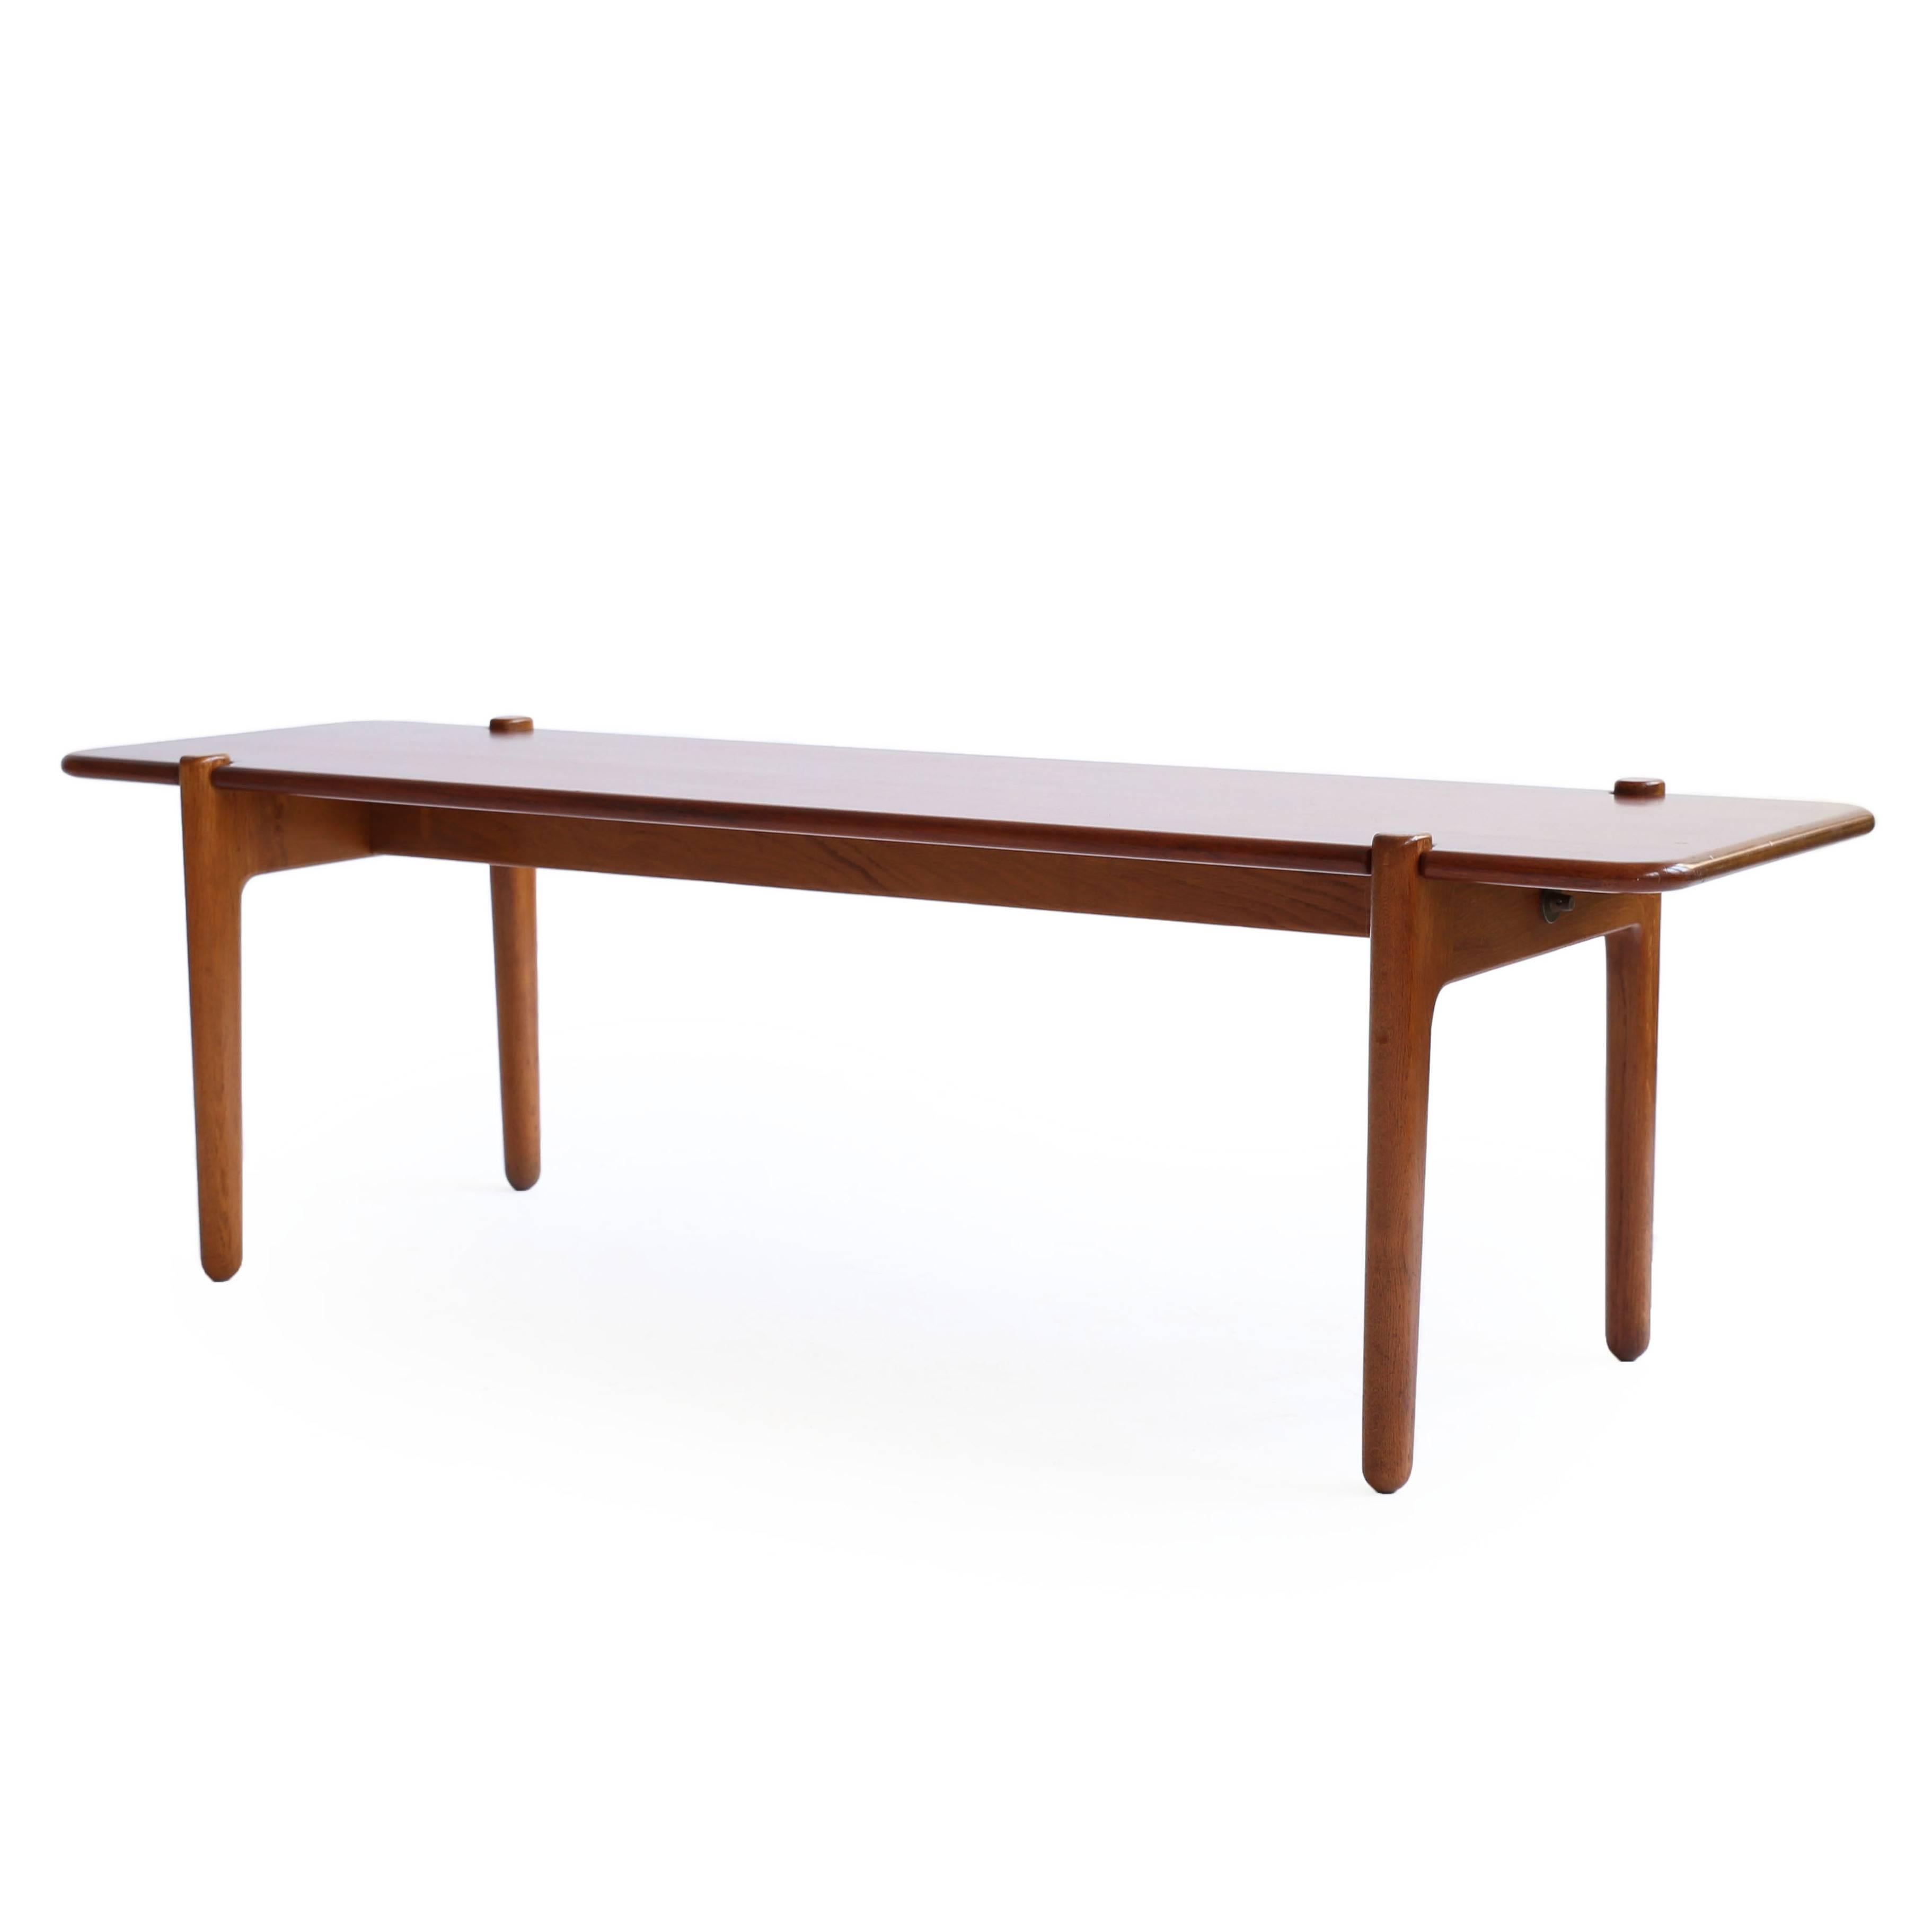 Minimalistic Hans J. Wegner Table or Bench for Johannes Hansen